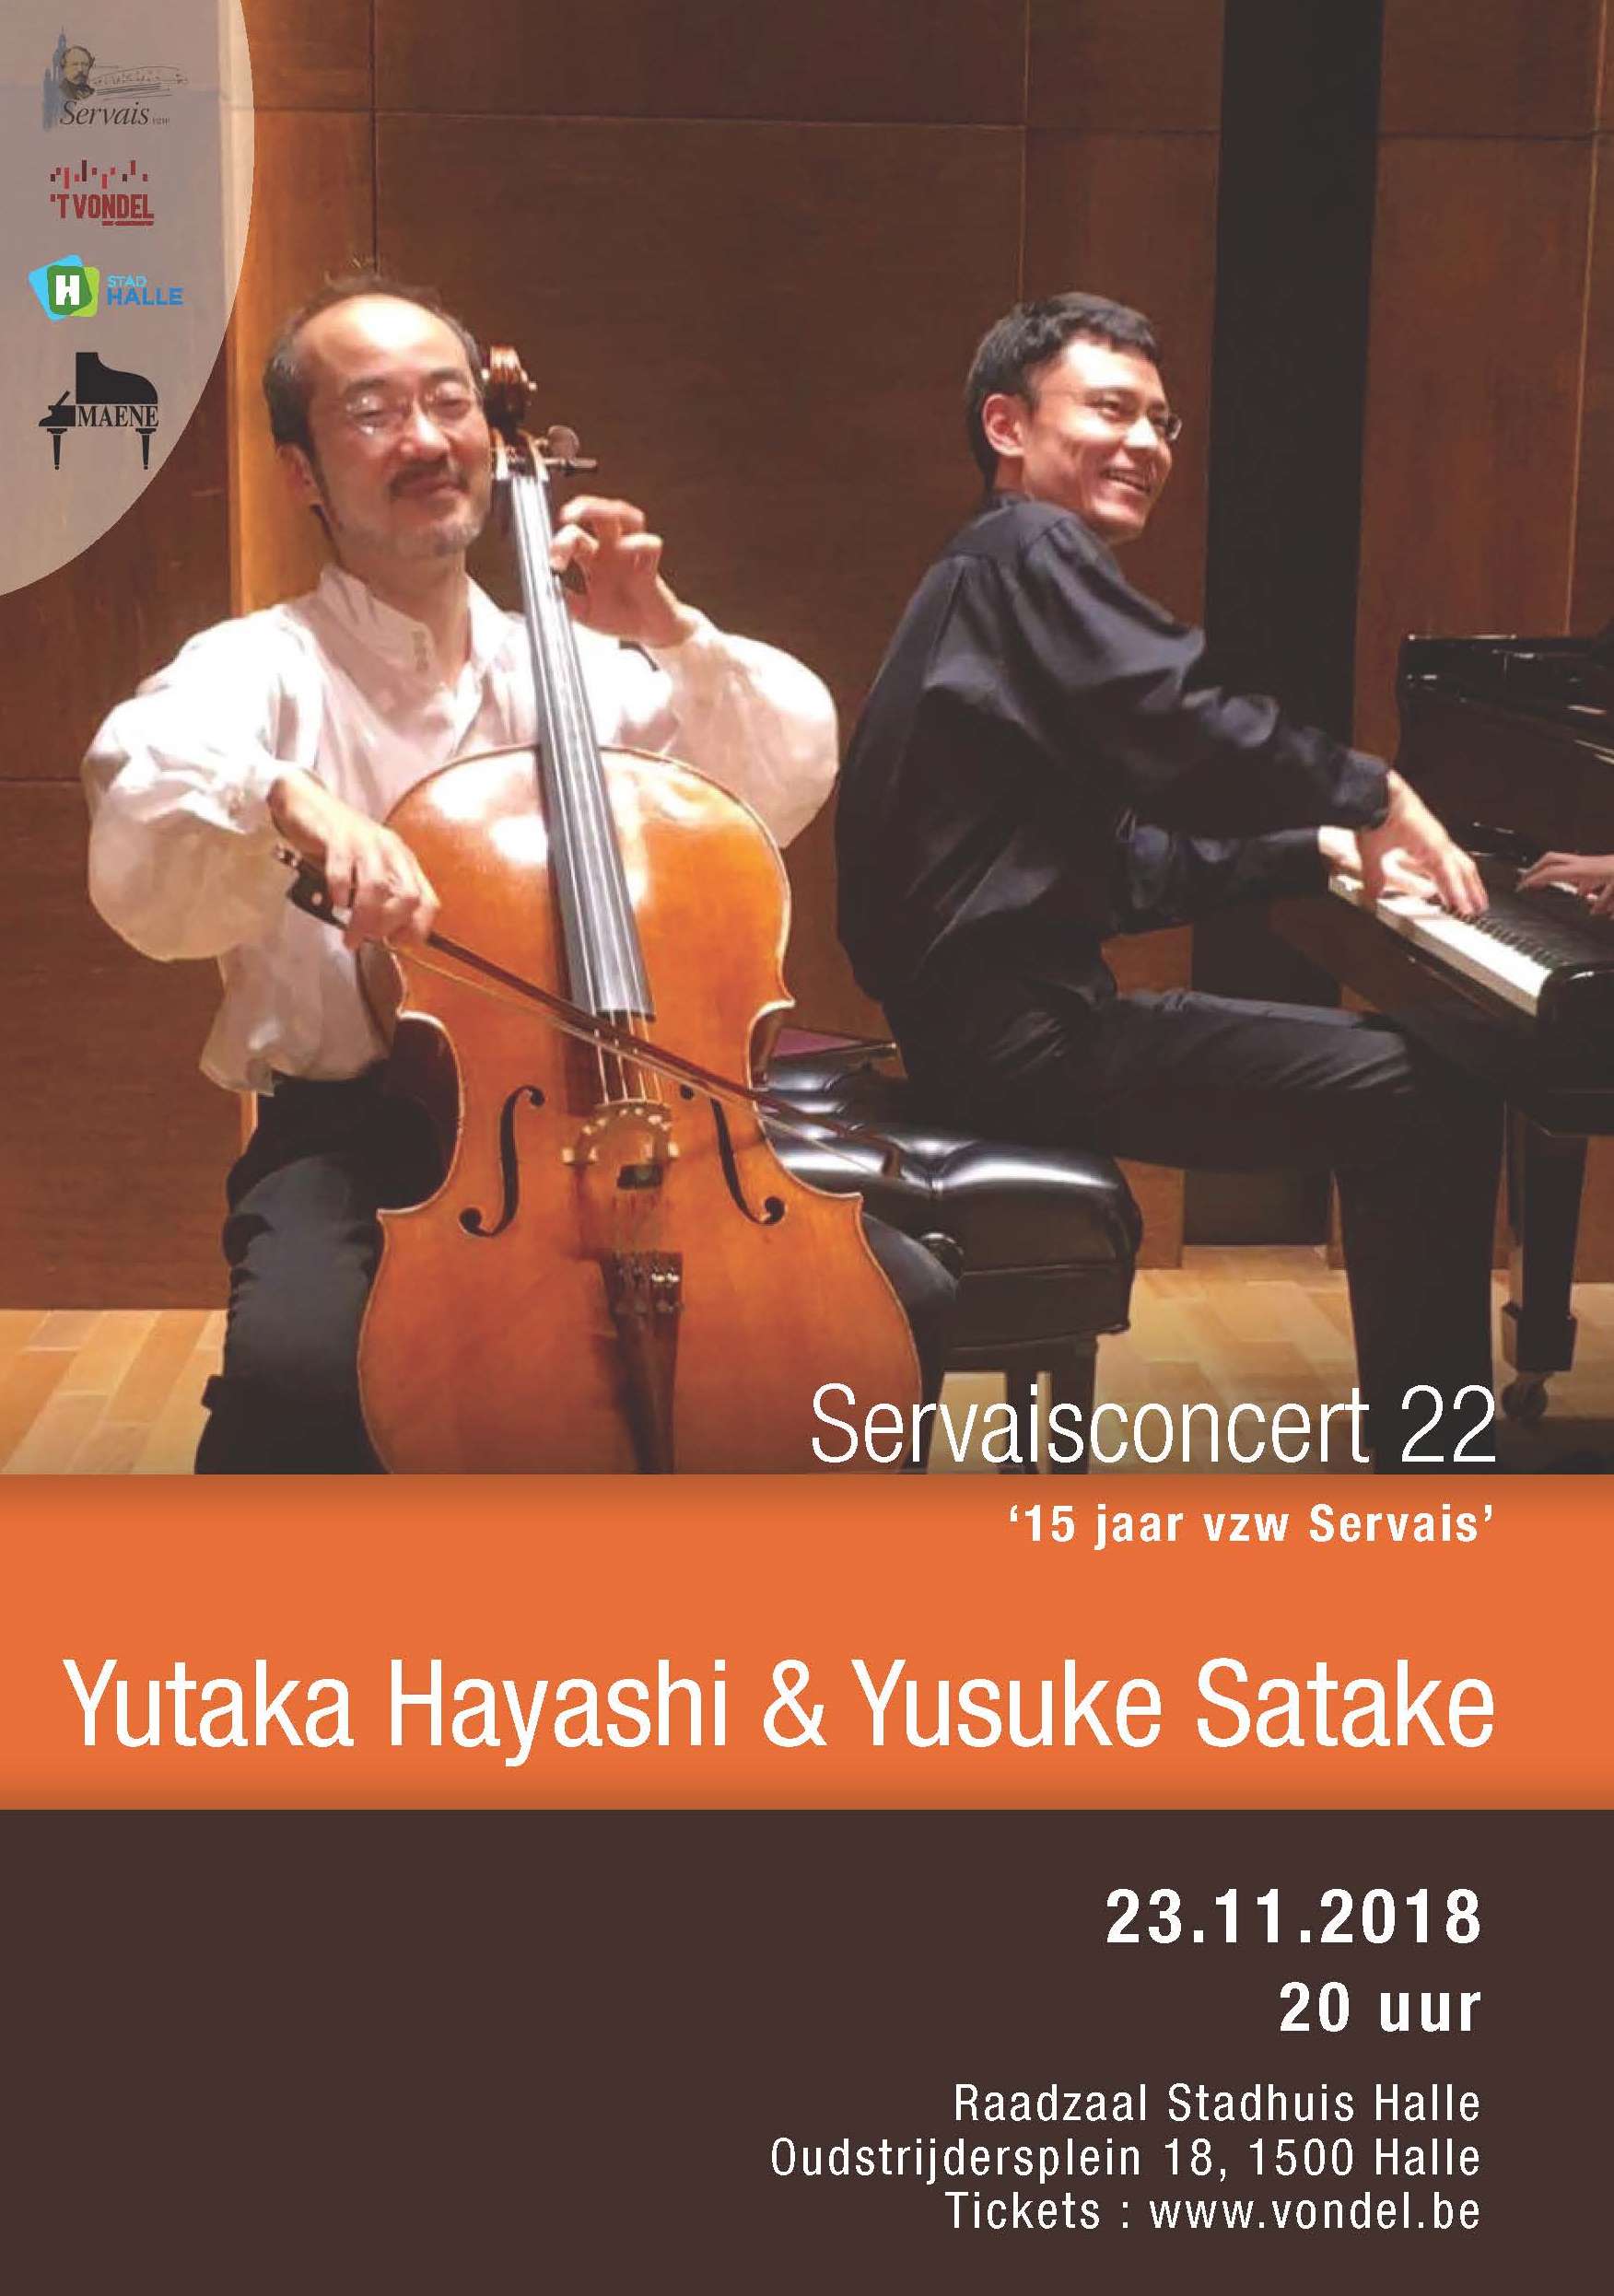 22e Servaisconcert met Yutaka Hayashi